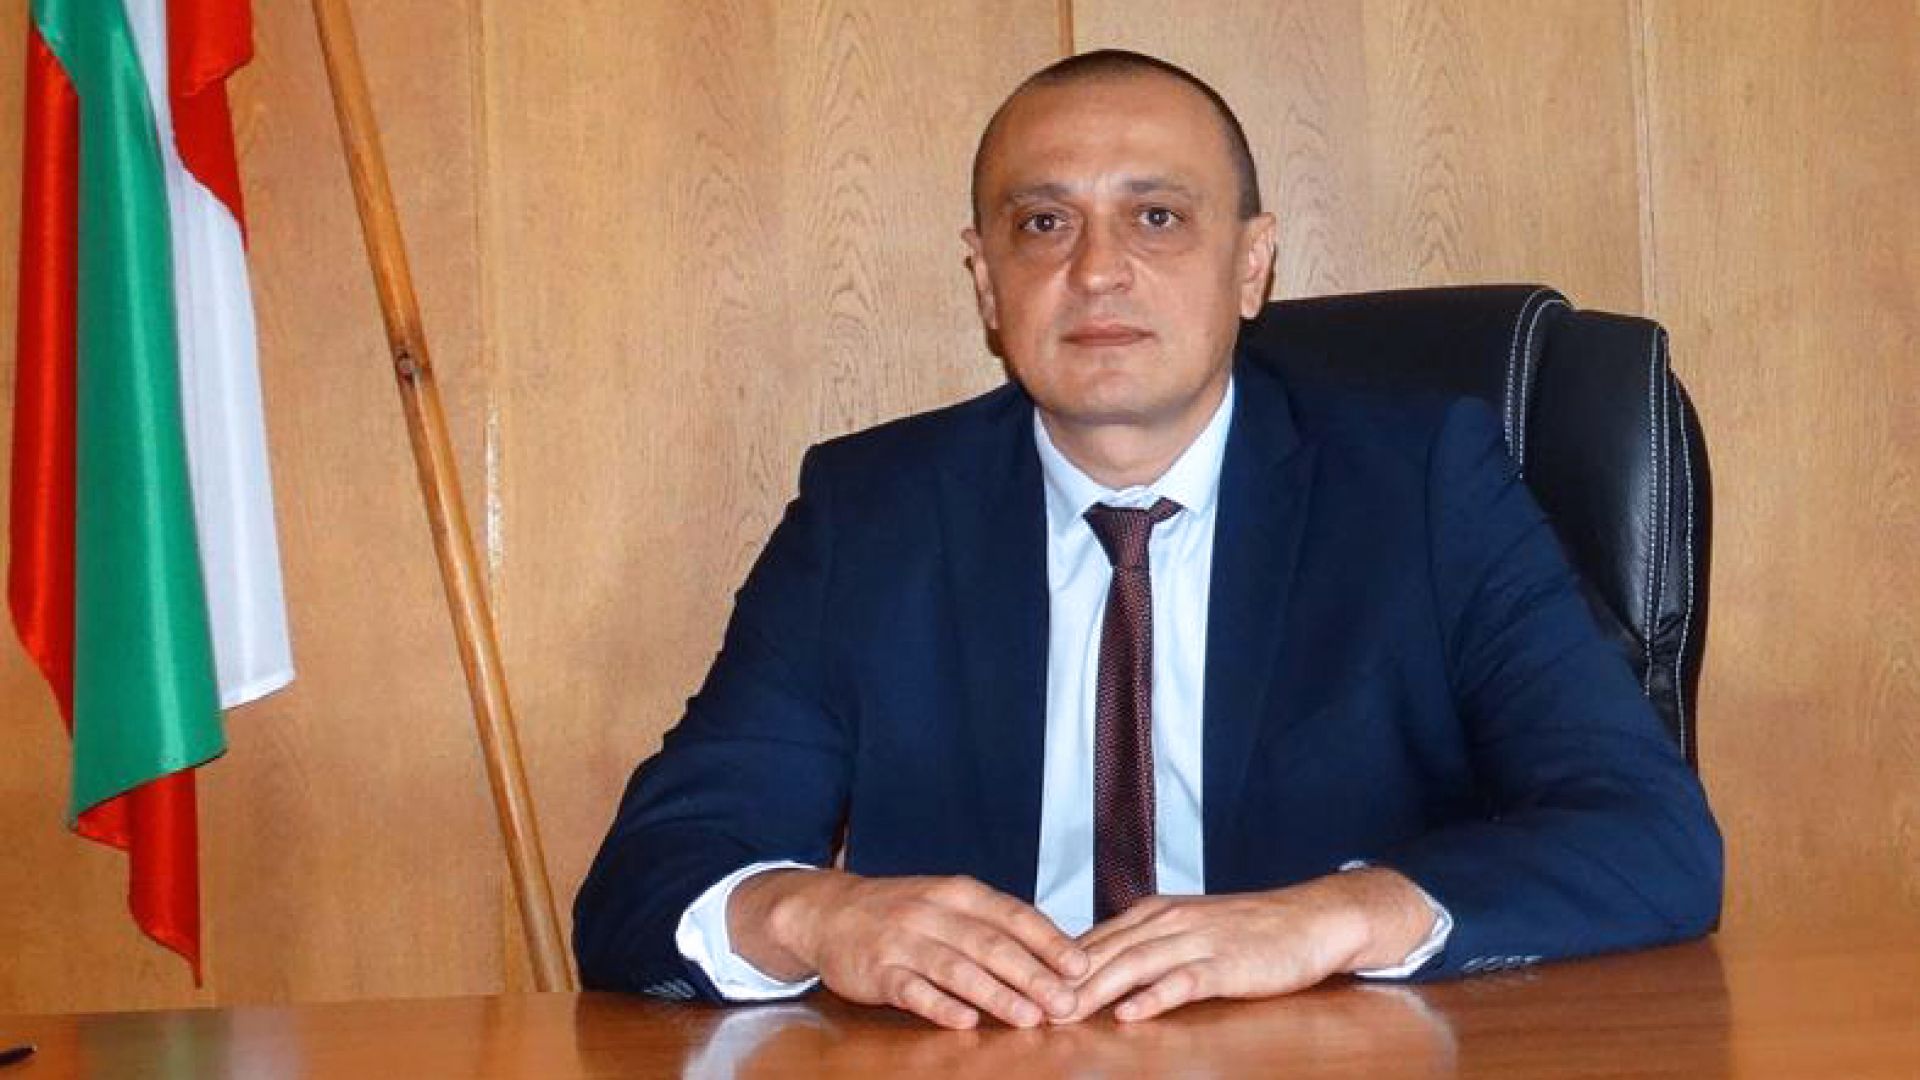 Старши комисар Калоян Милтенов става зам.-директор на ГД "Национална полиция"